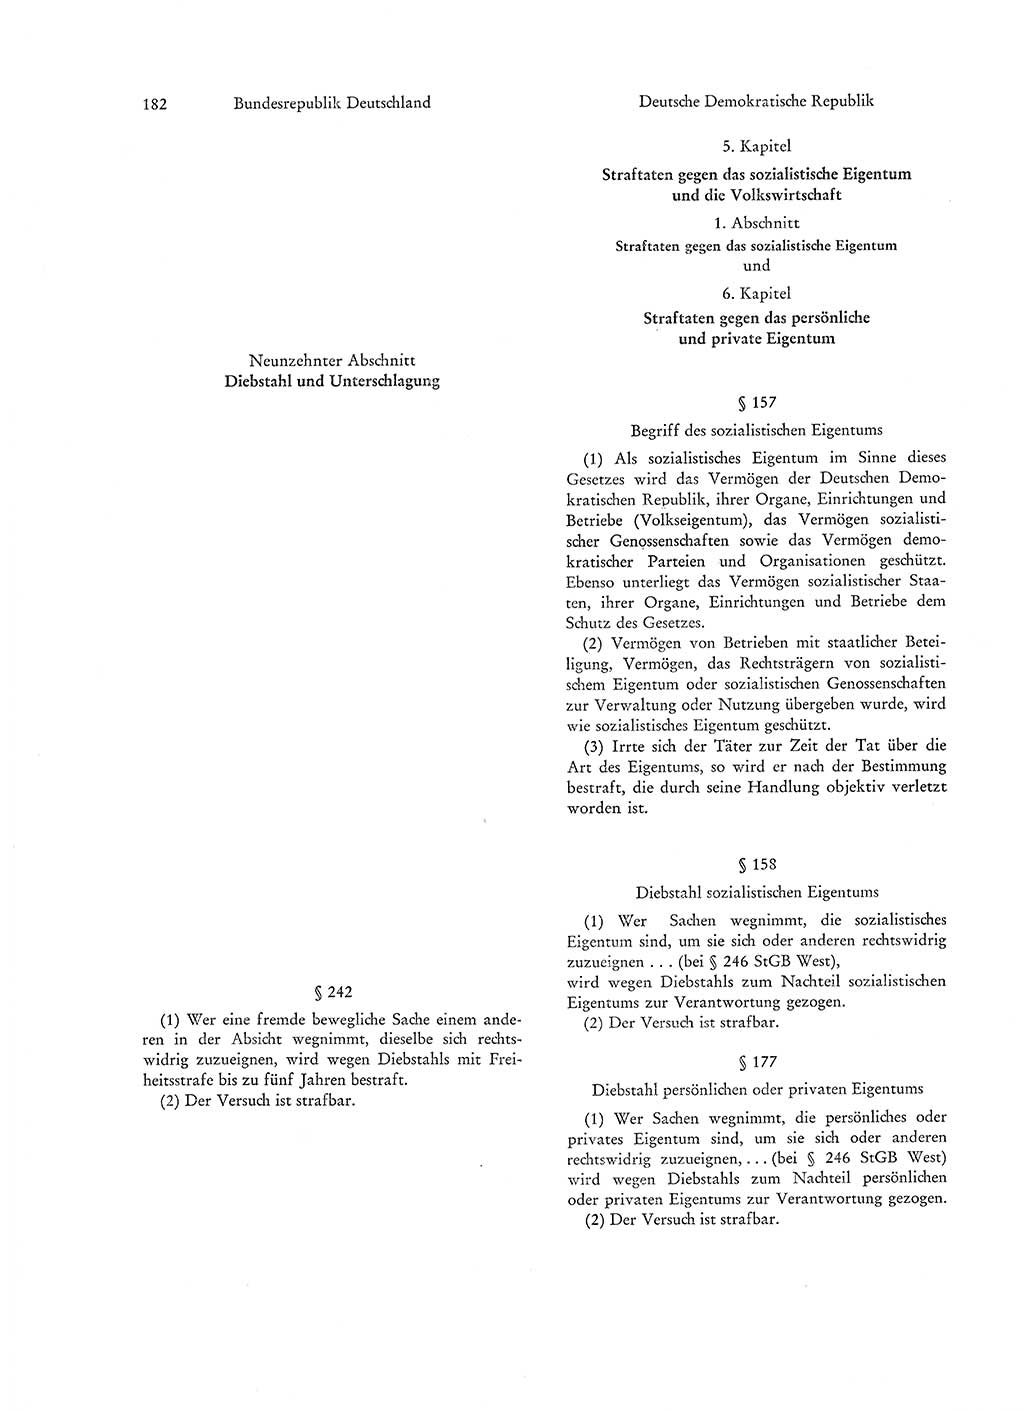 Strafgesetzgebung in Deutschland [Bundesrepublik Deutschland (BRD) und Deutsche Demokratische Republik (DDR)] 1972, Seite 182 (Str.-Ges. Dtl. StGB BRD DDR 1972, S. 182)